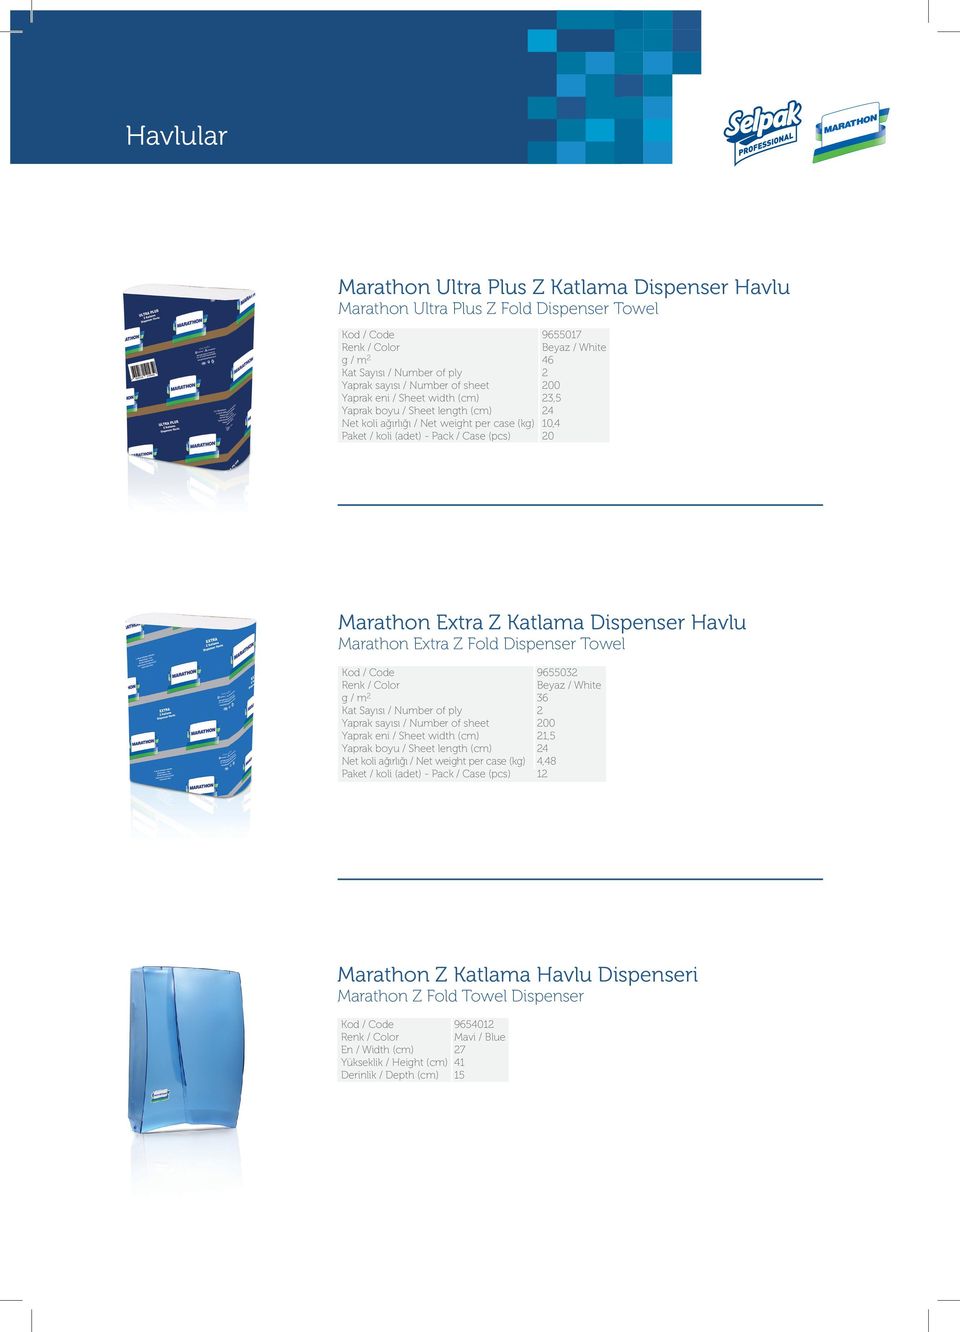 Marathon Extra Z Fold Dispenser Towel g / m Paket / koli (adet) - Pack / Case (pcs) 965503 36 00 1,5 4 4,48 1